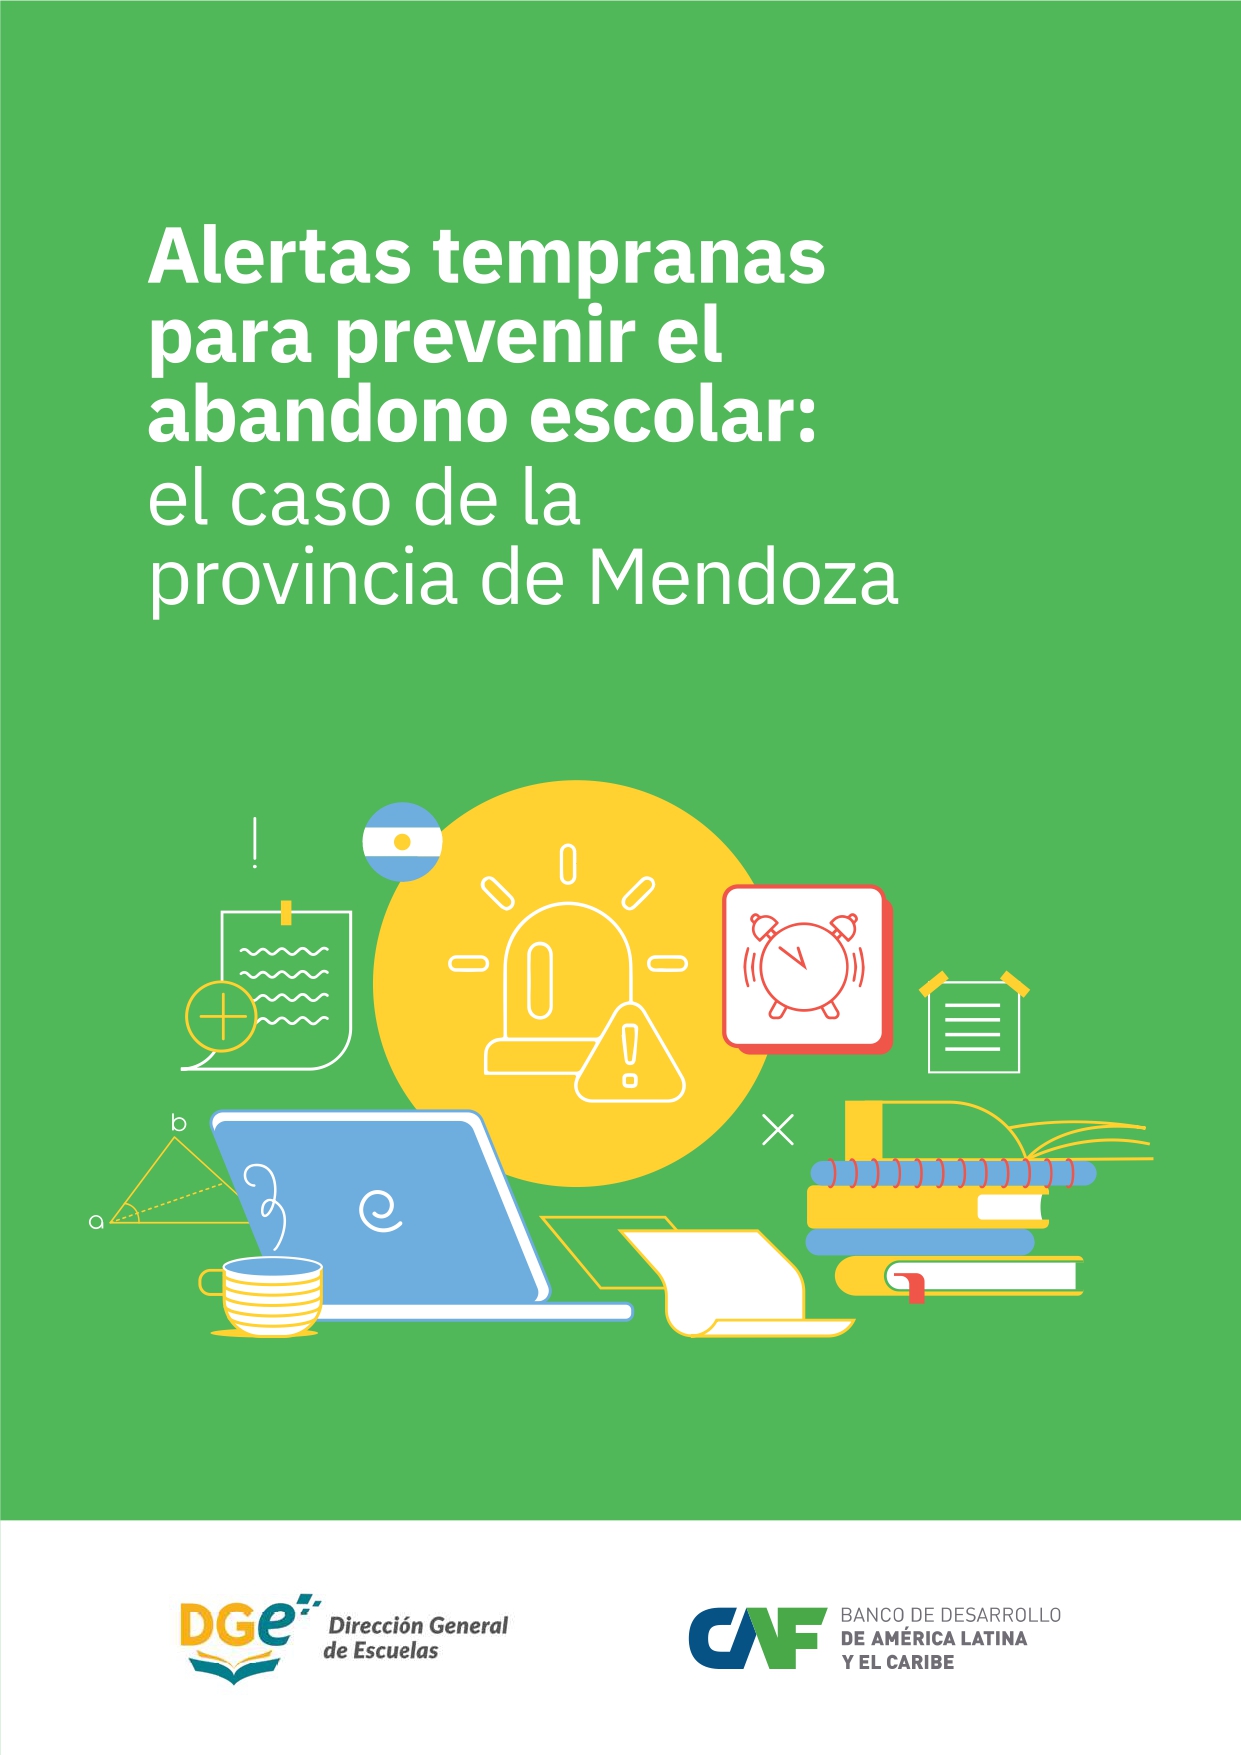 Alertas tempranas para prevenir el abandono escolar: el caso de la provincia de Mendoza